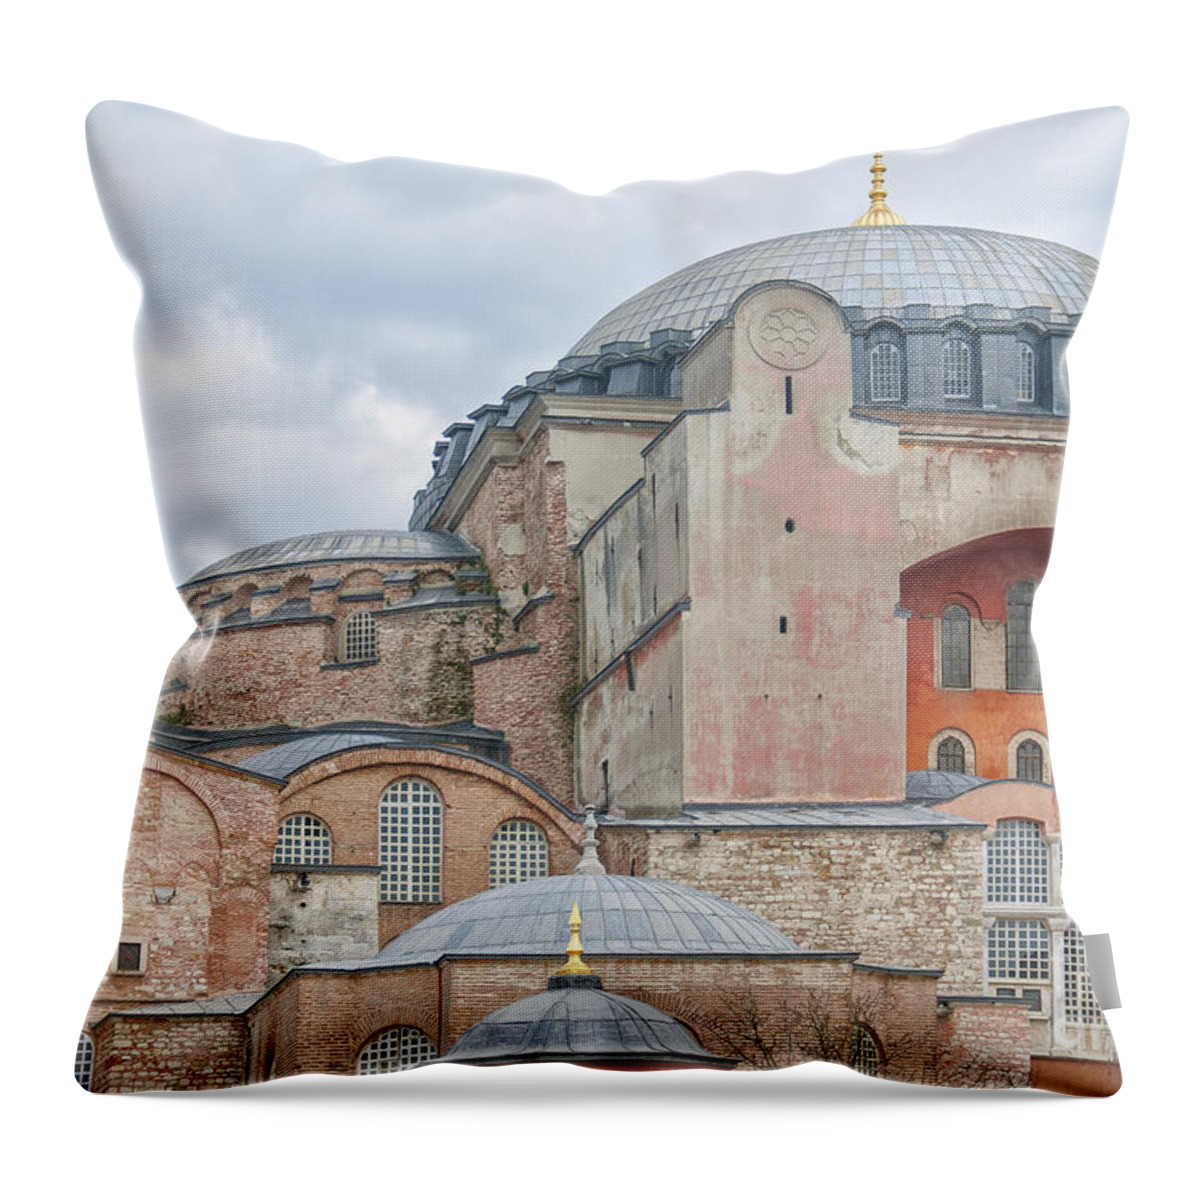 Turkey Throw Pillow featuring the photograph Hagia Sophia 10 by Antony McAulay